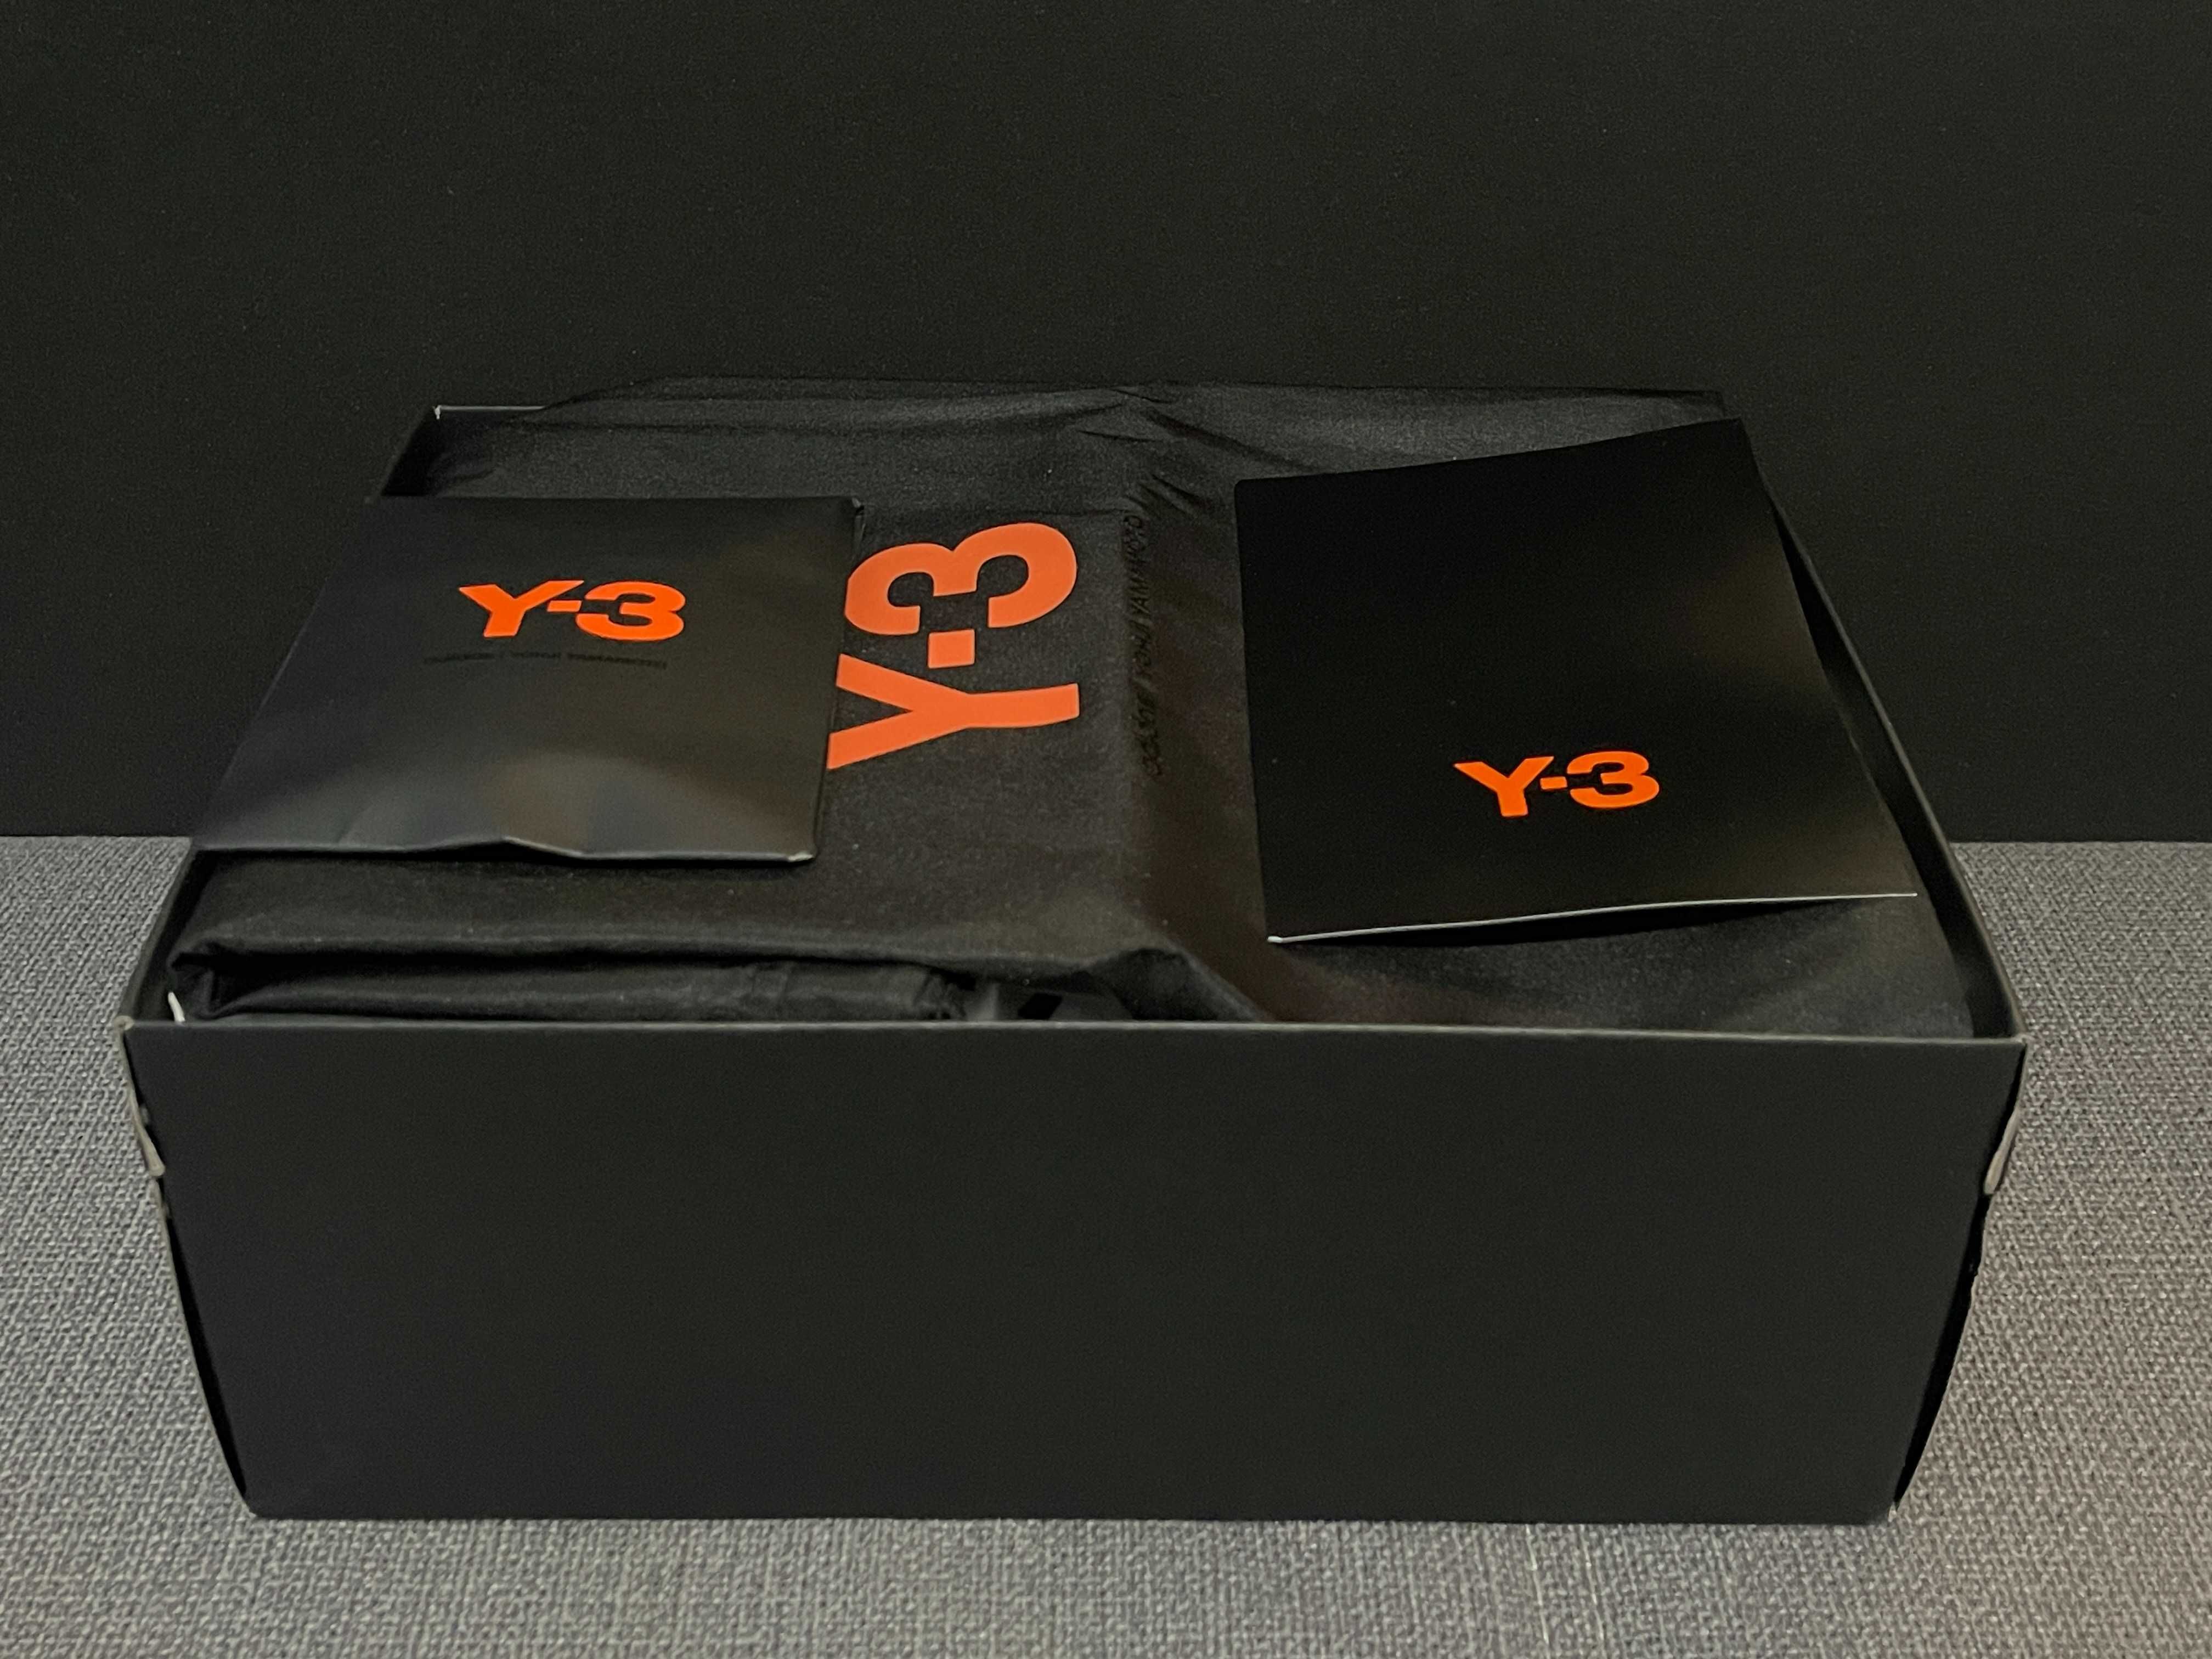 adidas Y-3 Yohji Yamamoto Hicho Core White (Factura/Garantie)